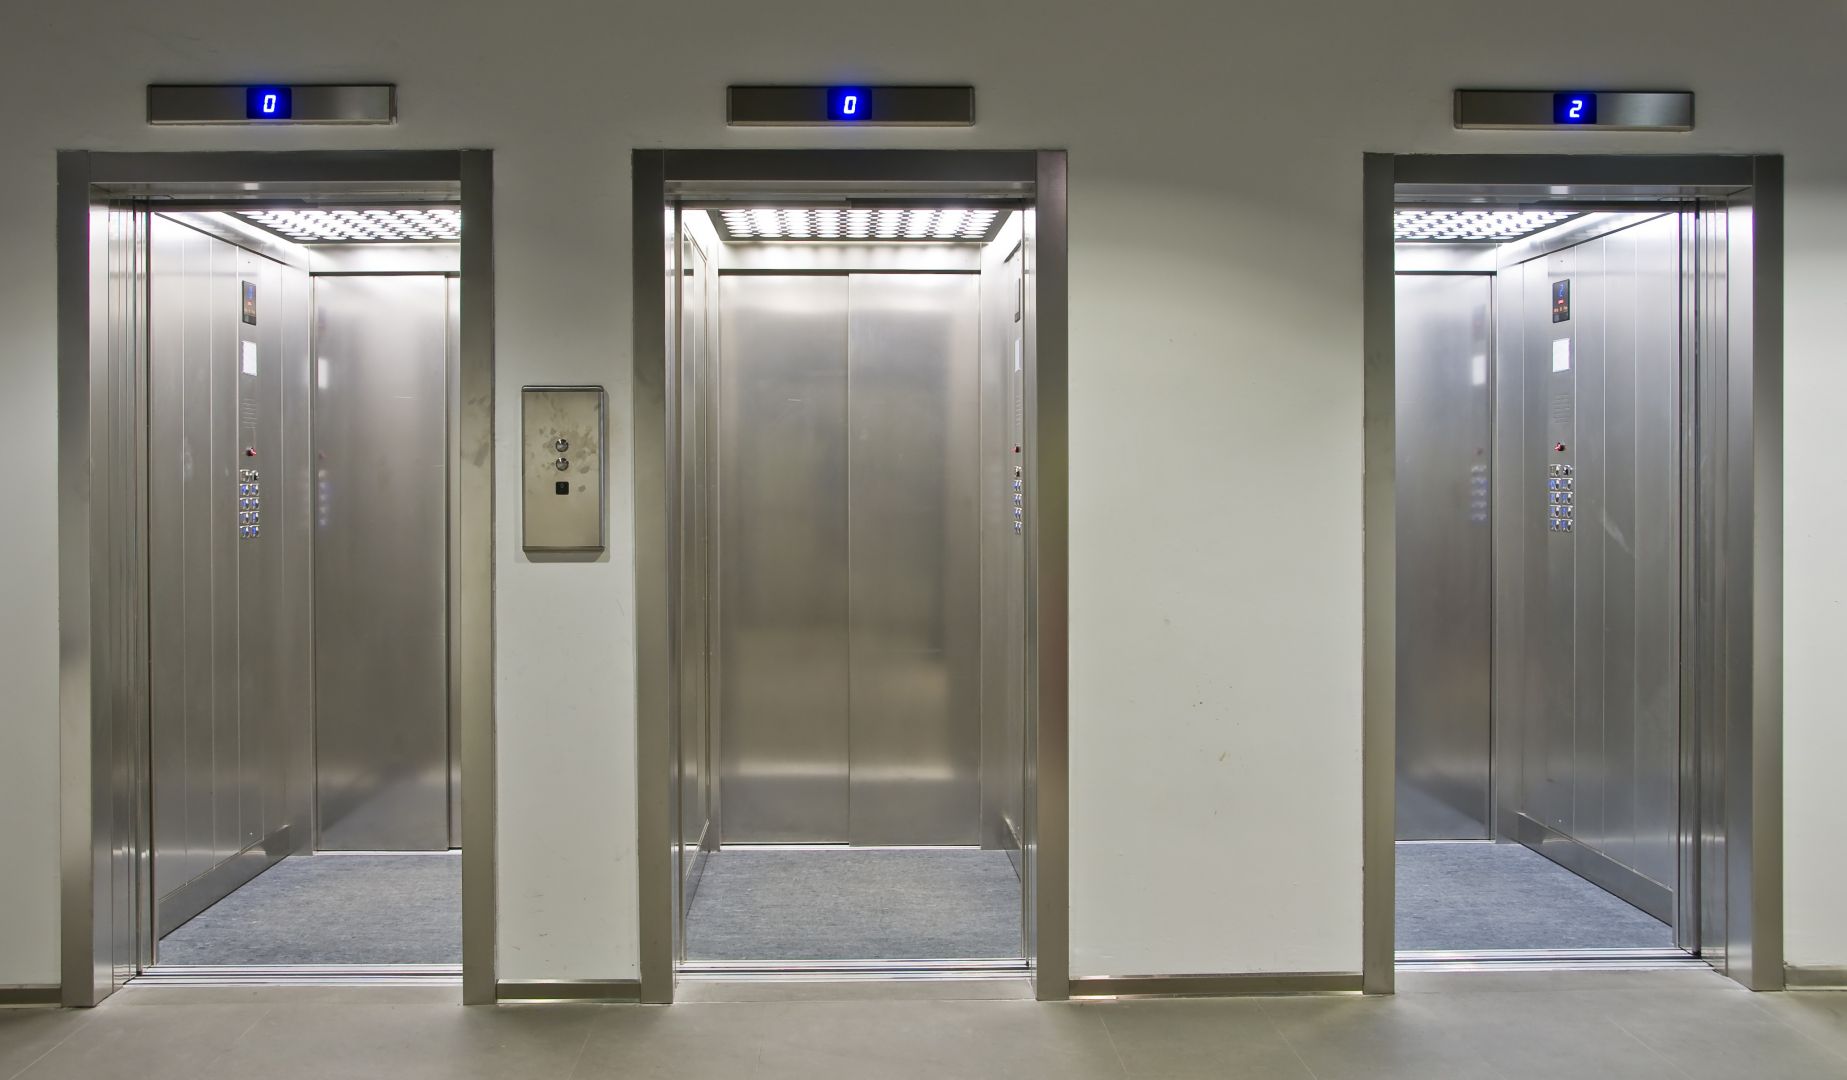 Zakázka na modernizace výtahů v bytových domech (Výtahy a servis) - Děčín